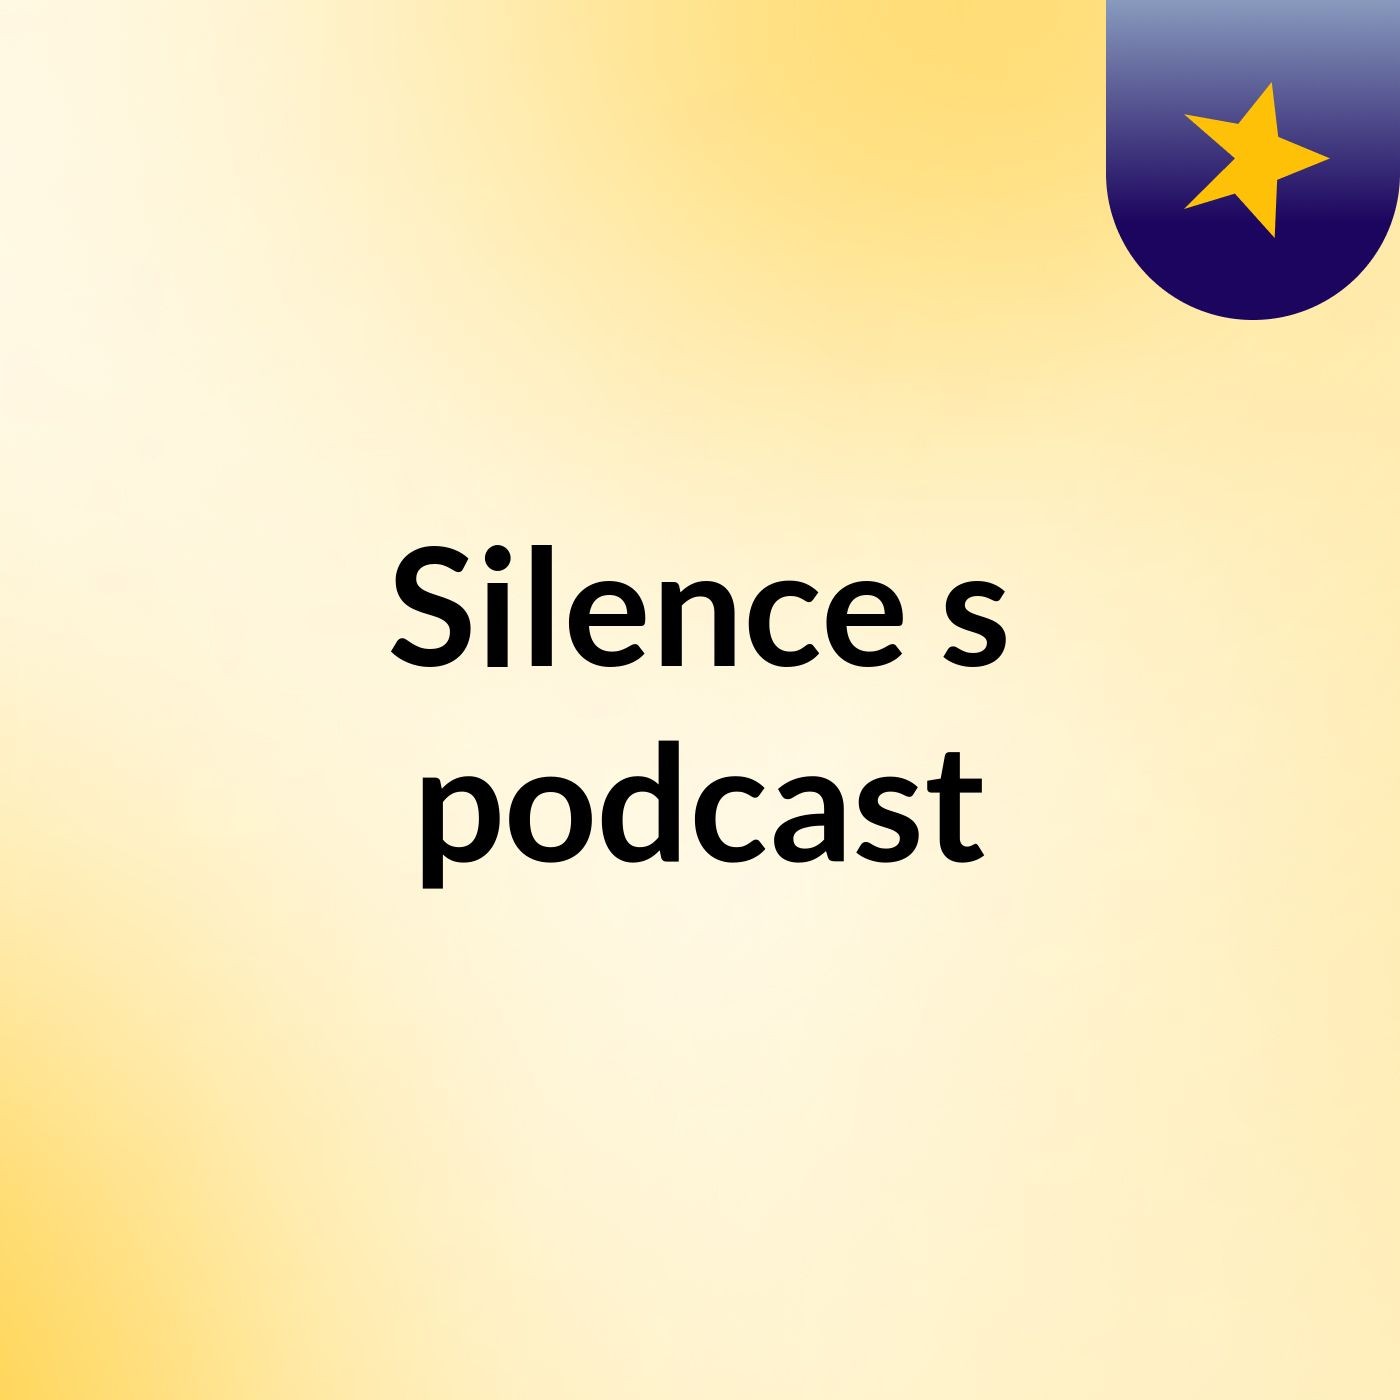 Silence's podcast